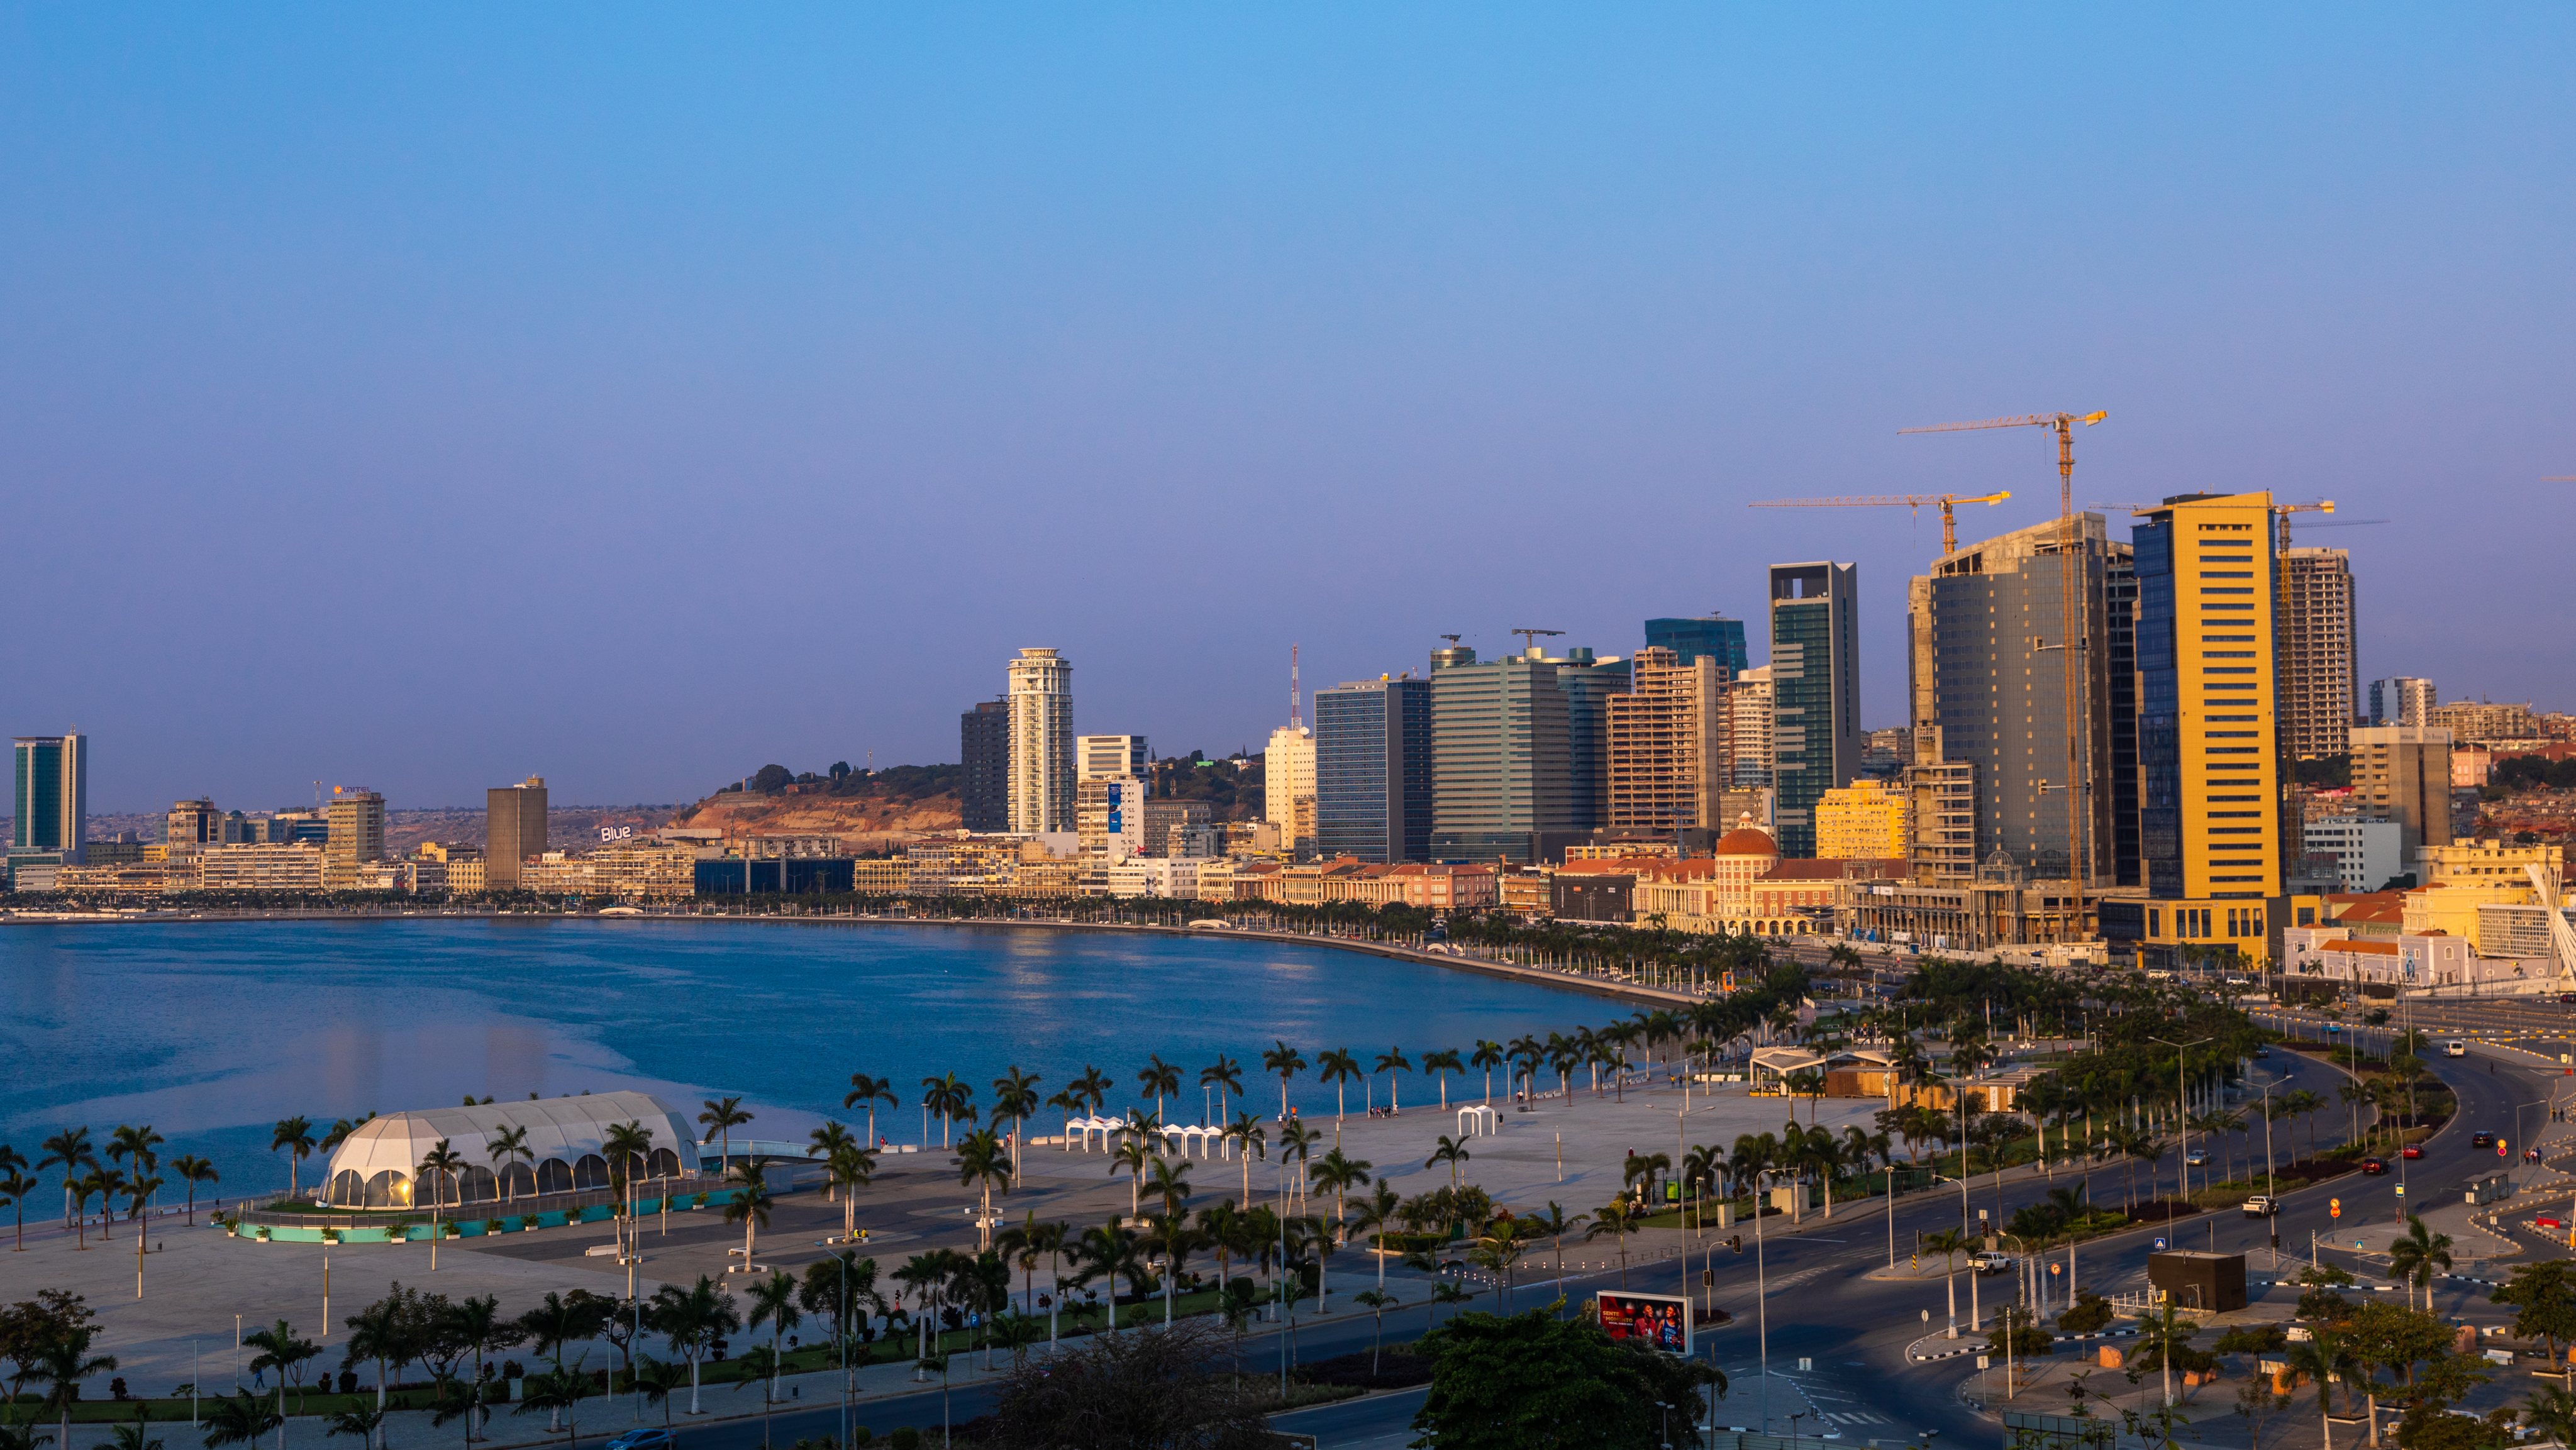 View over the new Marginal promenade called avenida 4 de fevereiro, Luanda Province, Luanda, Angola